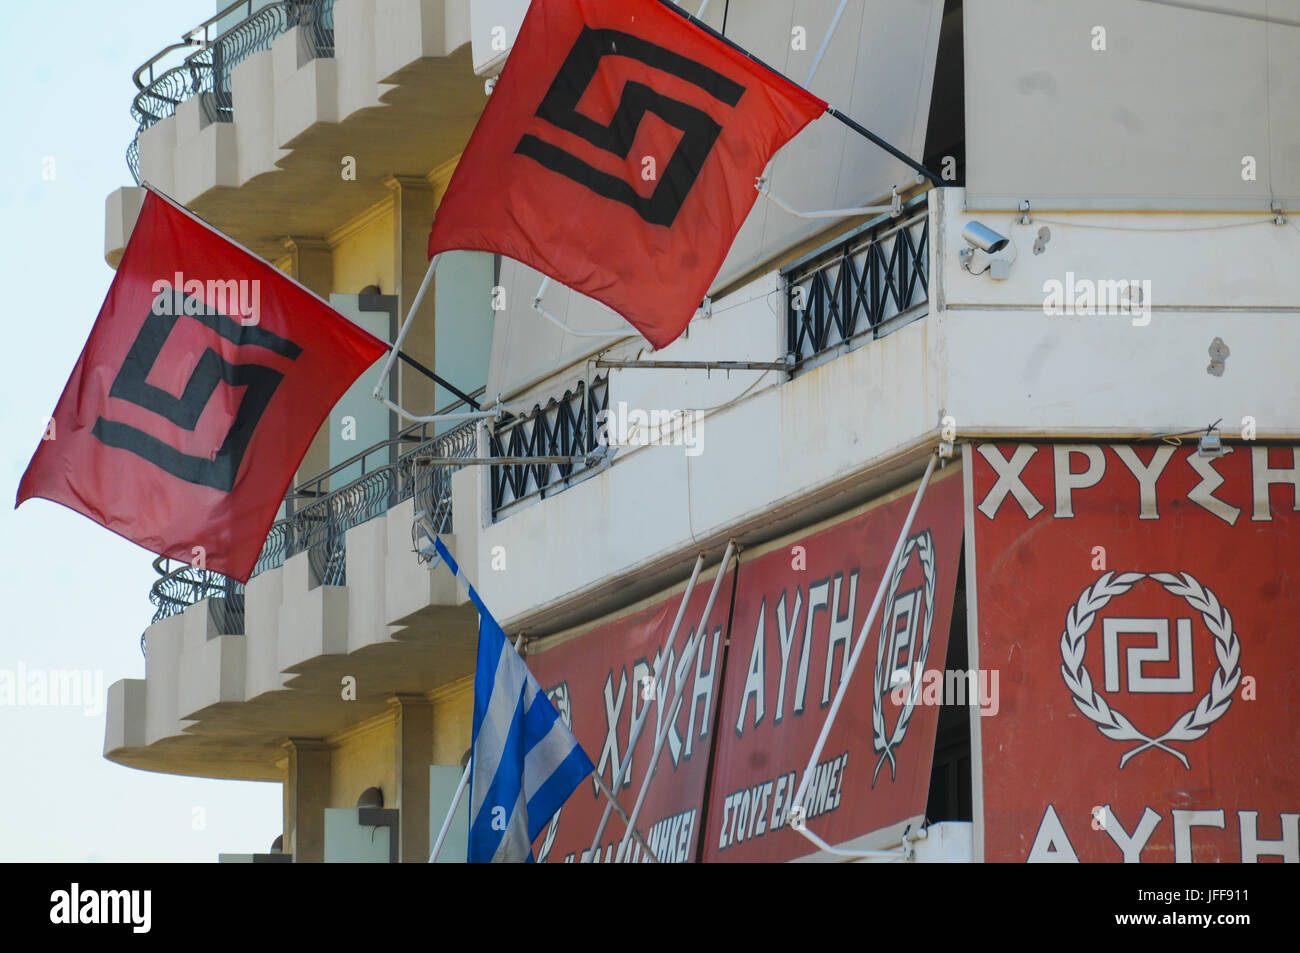 Nationalistischen Fahnen auf der Golden Dawn - Chrysí Avgí - ganz rechts Partei Headquarter, Athen, Attika, Greecei Stockfoto